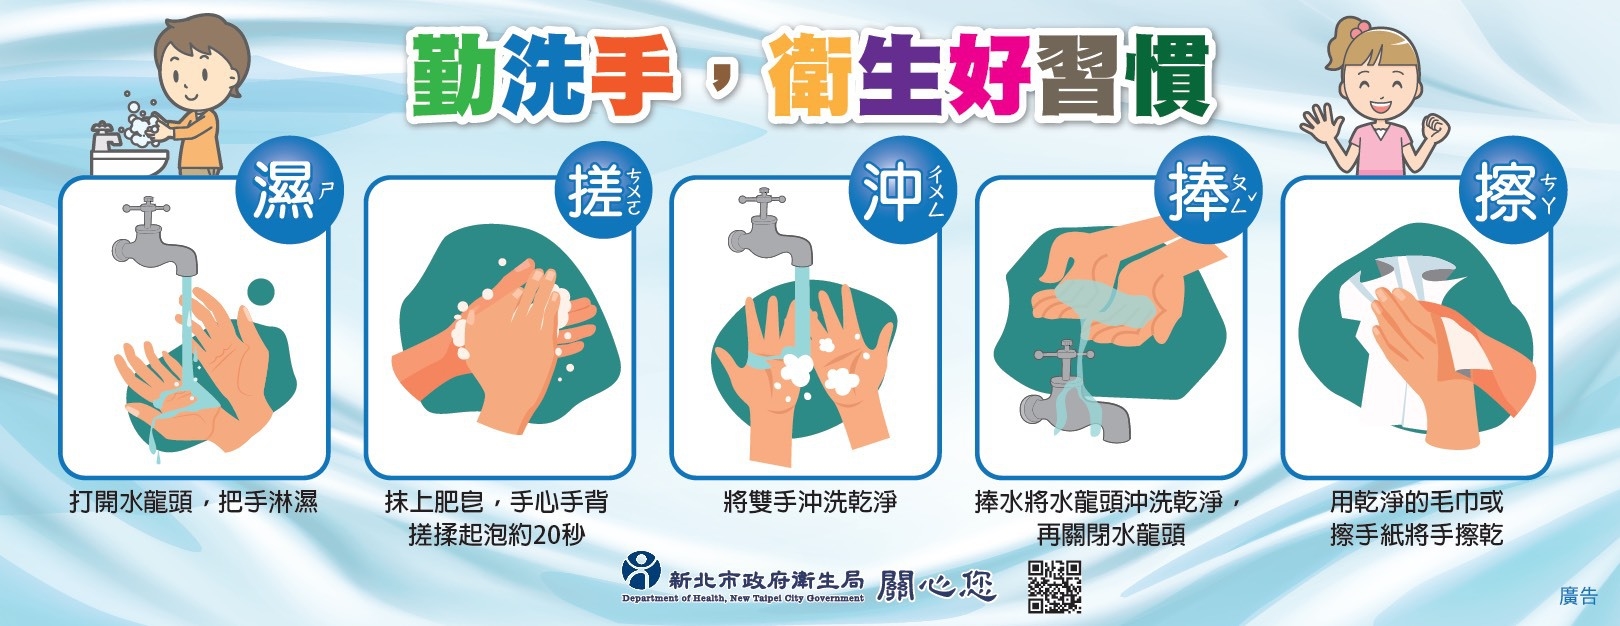 洗手方式-2